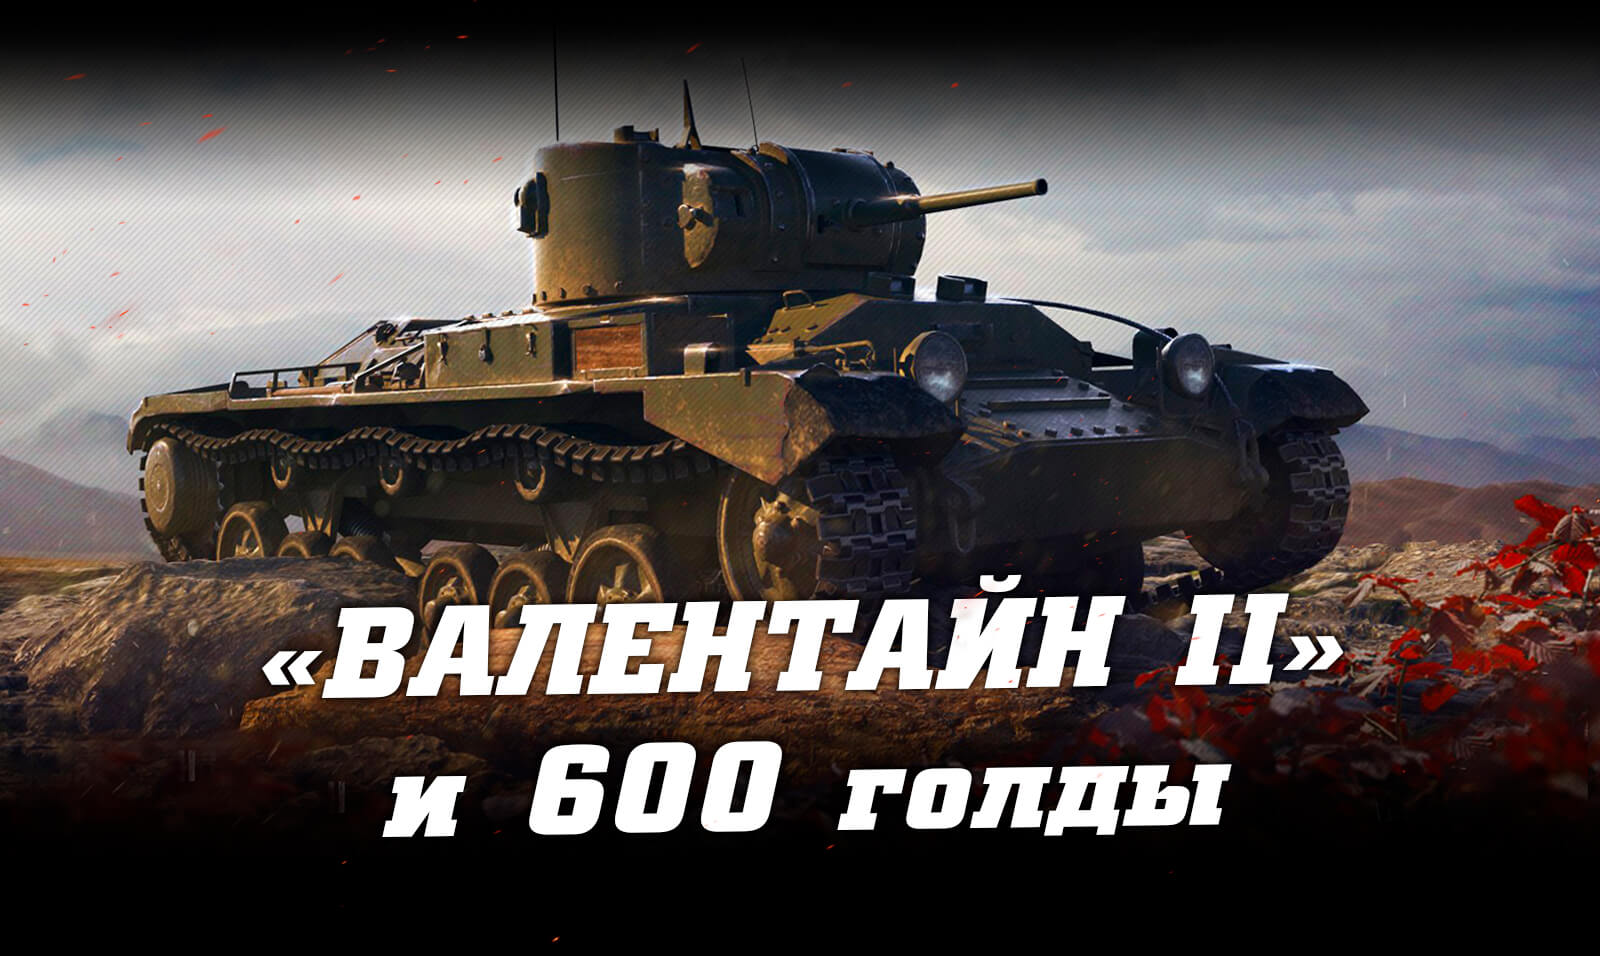 Змінено: 04-07-2019   шлях:   Інвайт-коди для World of Tanks   Інвайт-посилання для WoT (Валентайн II + 600 голди) на червень 2019